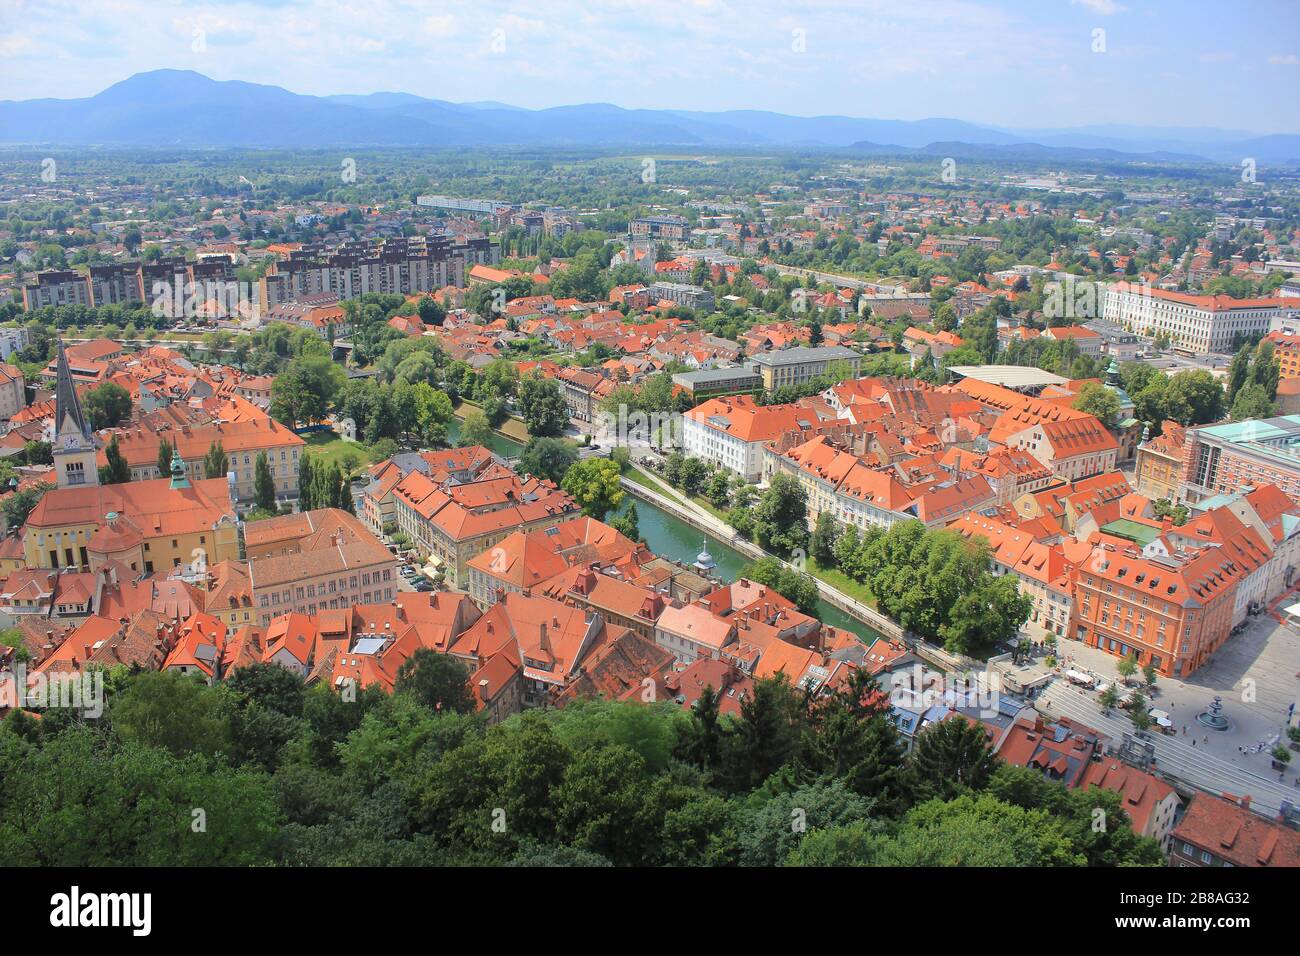 Le centre de Ljubljana et la rivière Ljubljana - vue depuis le château, le centre de Ljubljana et la région de Vic, la Slovénie et la Slovénie Banque D'Images